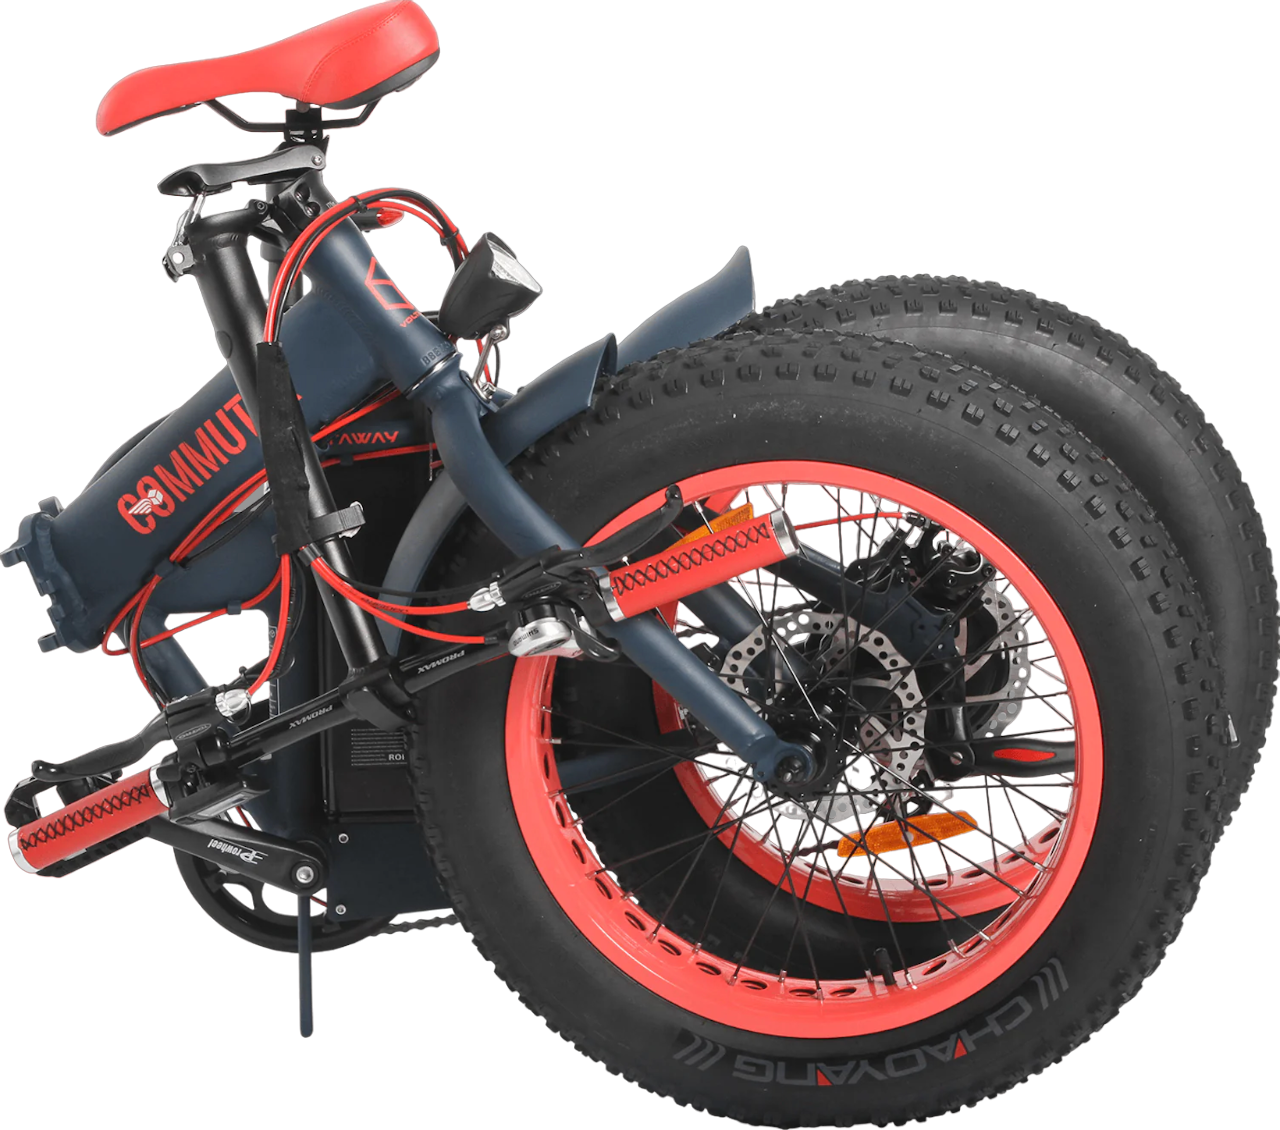 Rood-blauwe-opgevouwen-fatbike-genaamd-voltaway-commuter-met-sportieve-eigenschappen,-gefotografeerd-vanaf-de-zijkant